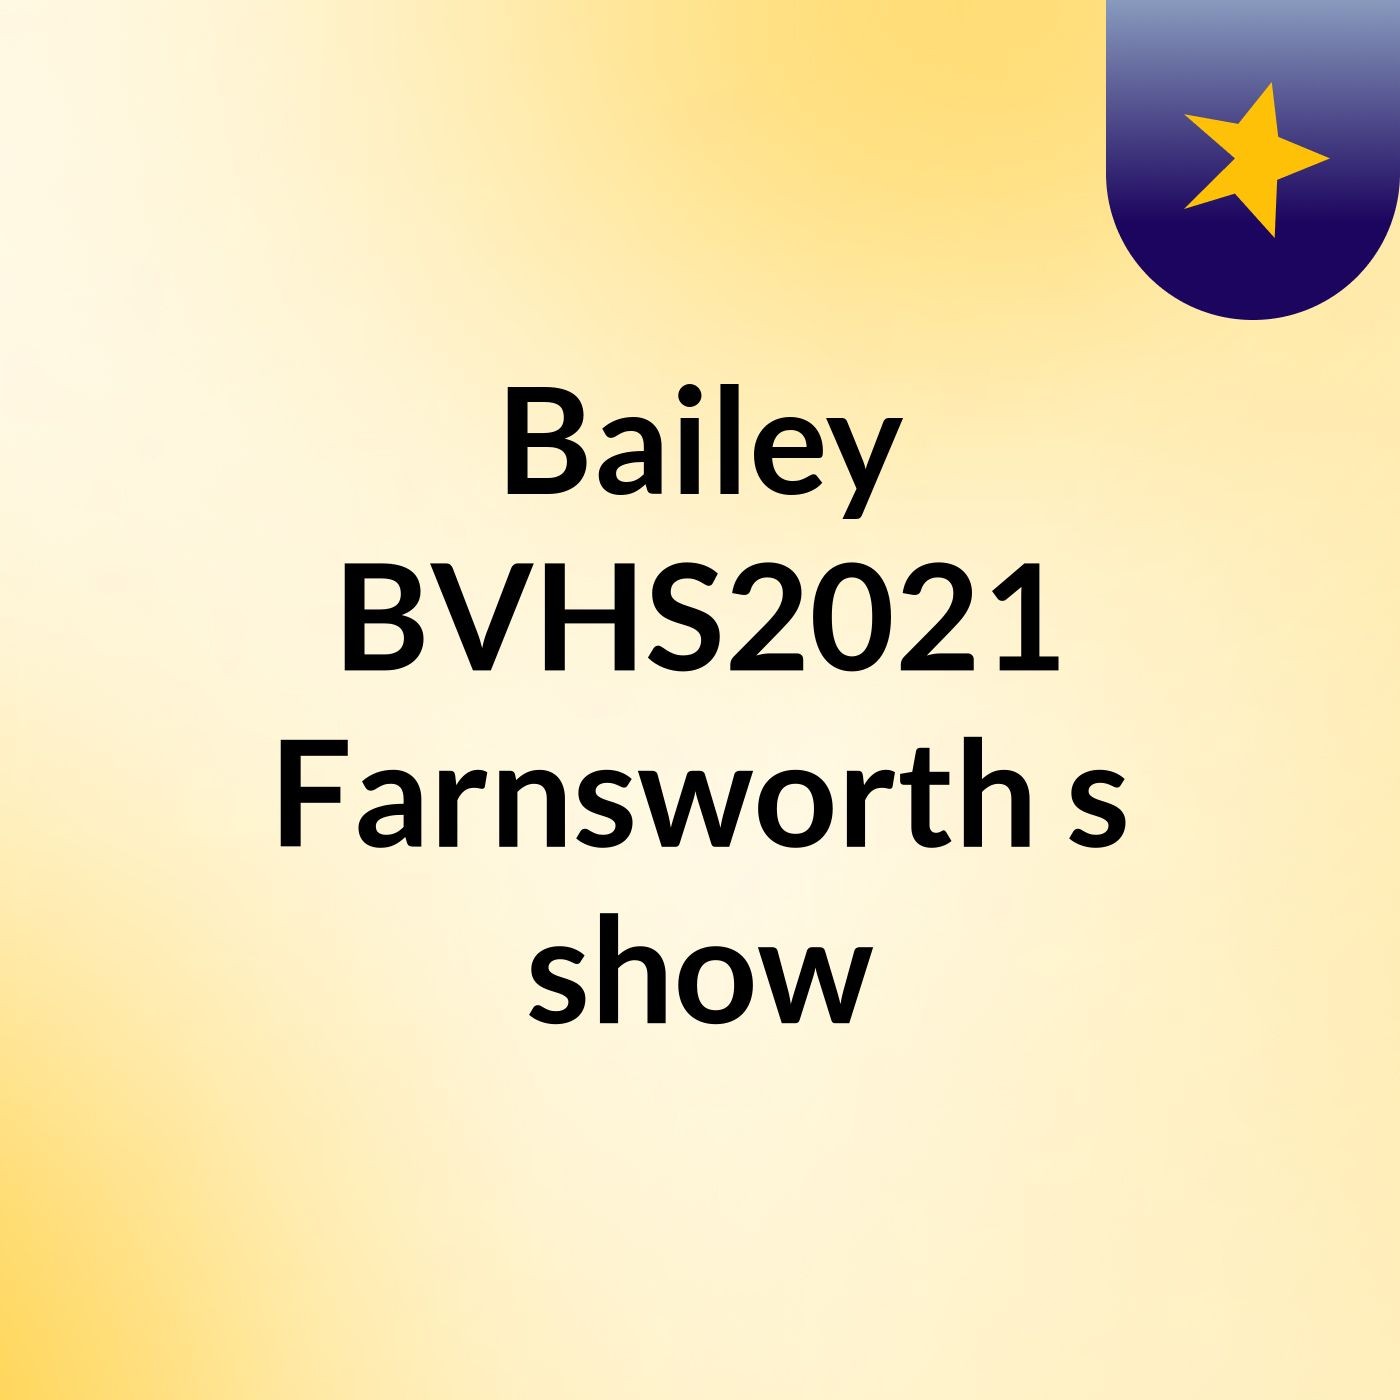 Bailey BVHS2021 Farnsworth's show